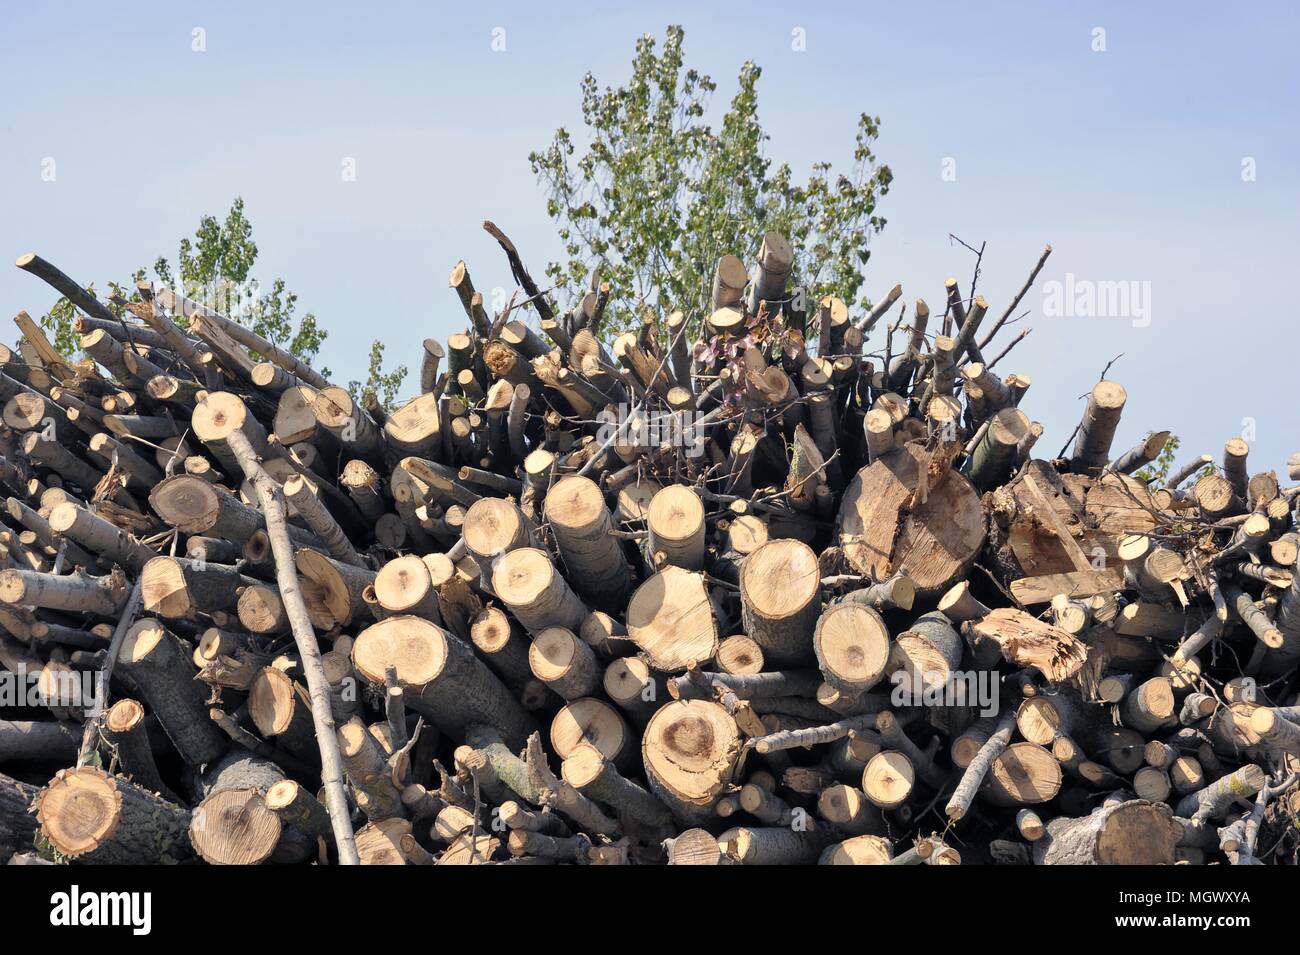 Planta para la explotación de la biomasa (residuos de madera) para producir electricidad, agua caliente para calefacción y pellets (combustible ecológico), de Abbiategrasso, Milan, Italia. Foto de stock